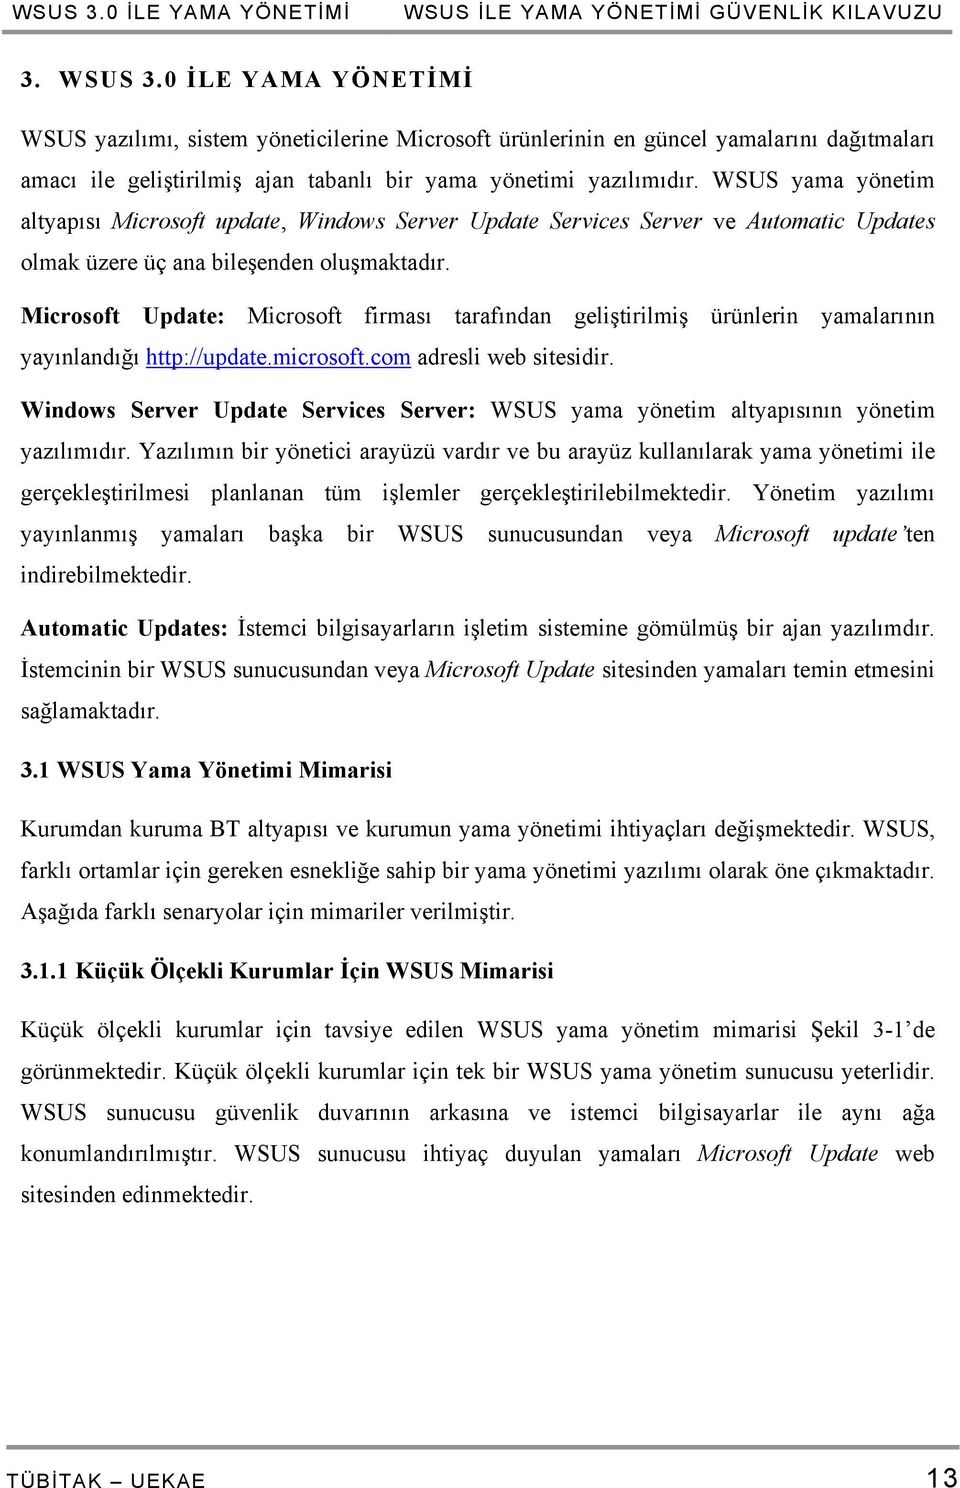 WSUS yama yönetim altyapısı Microsoft update, Windows Server Update Services Server ve Automatic Updates olmak üzere üç ana bileşenden oluşmaktadır.